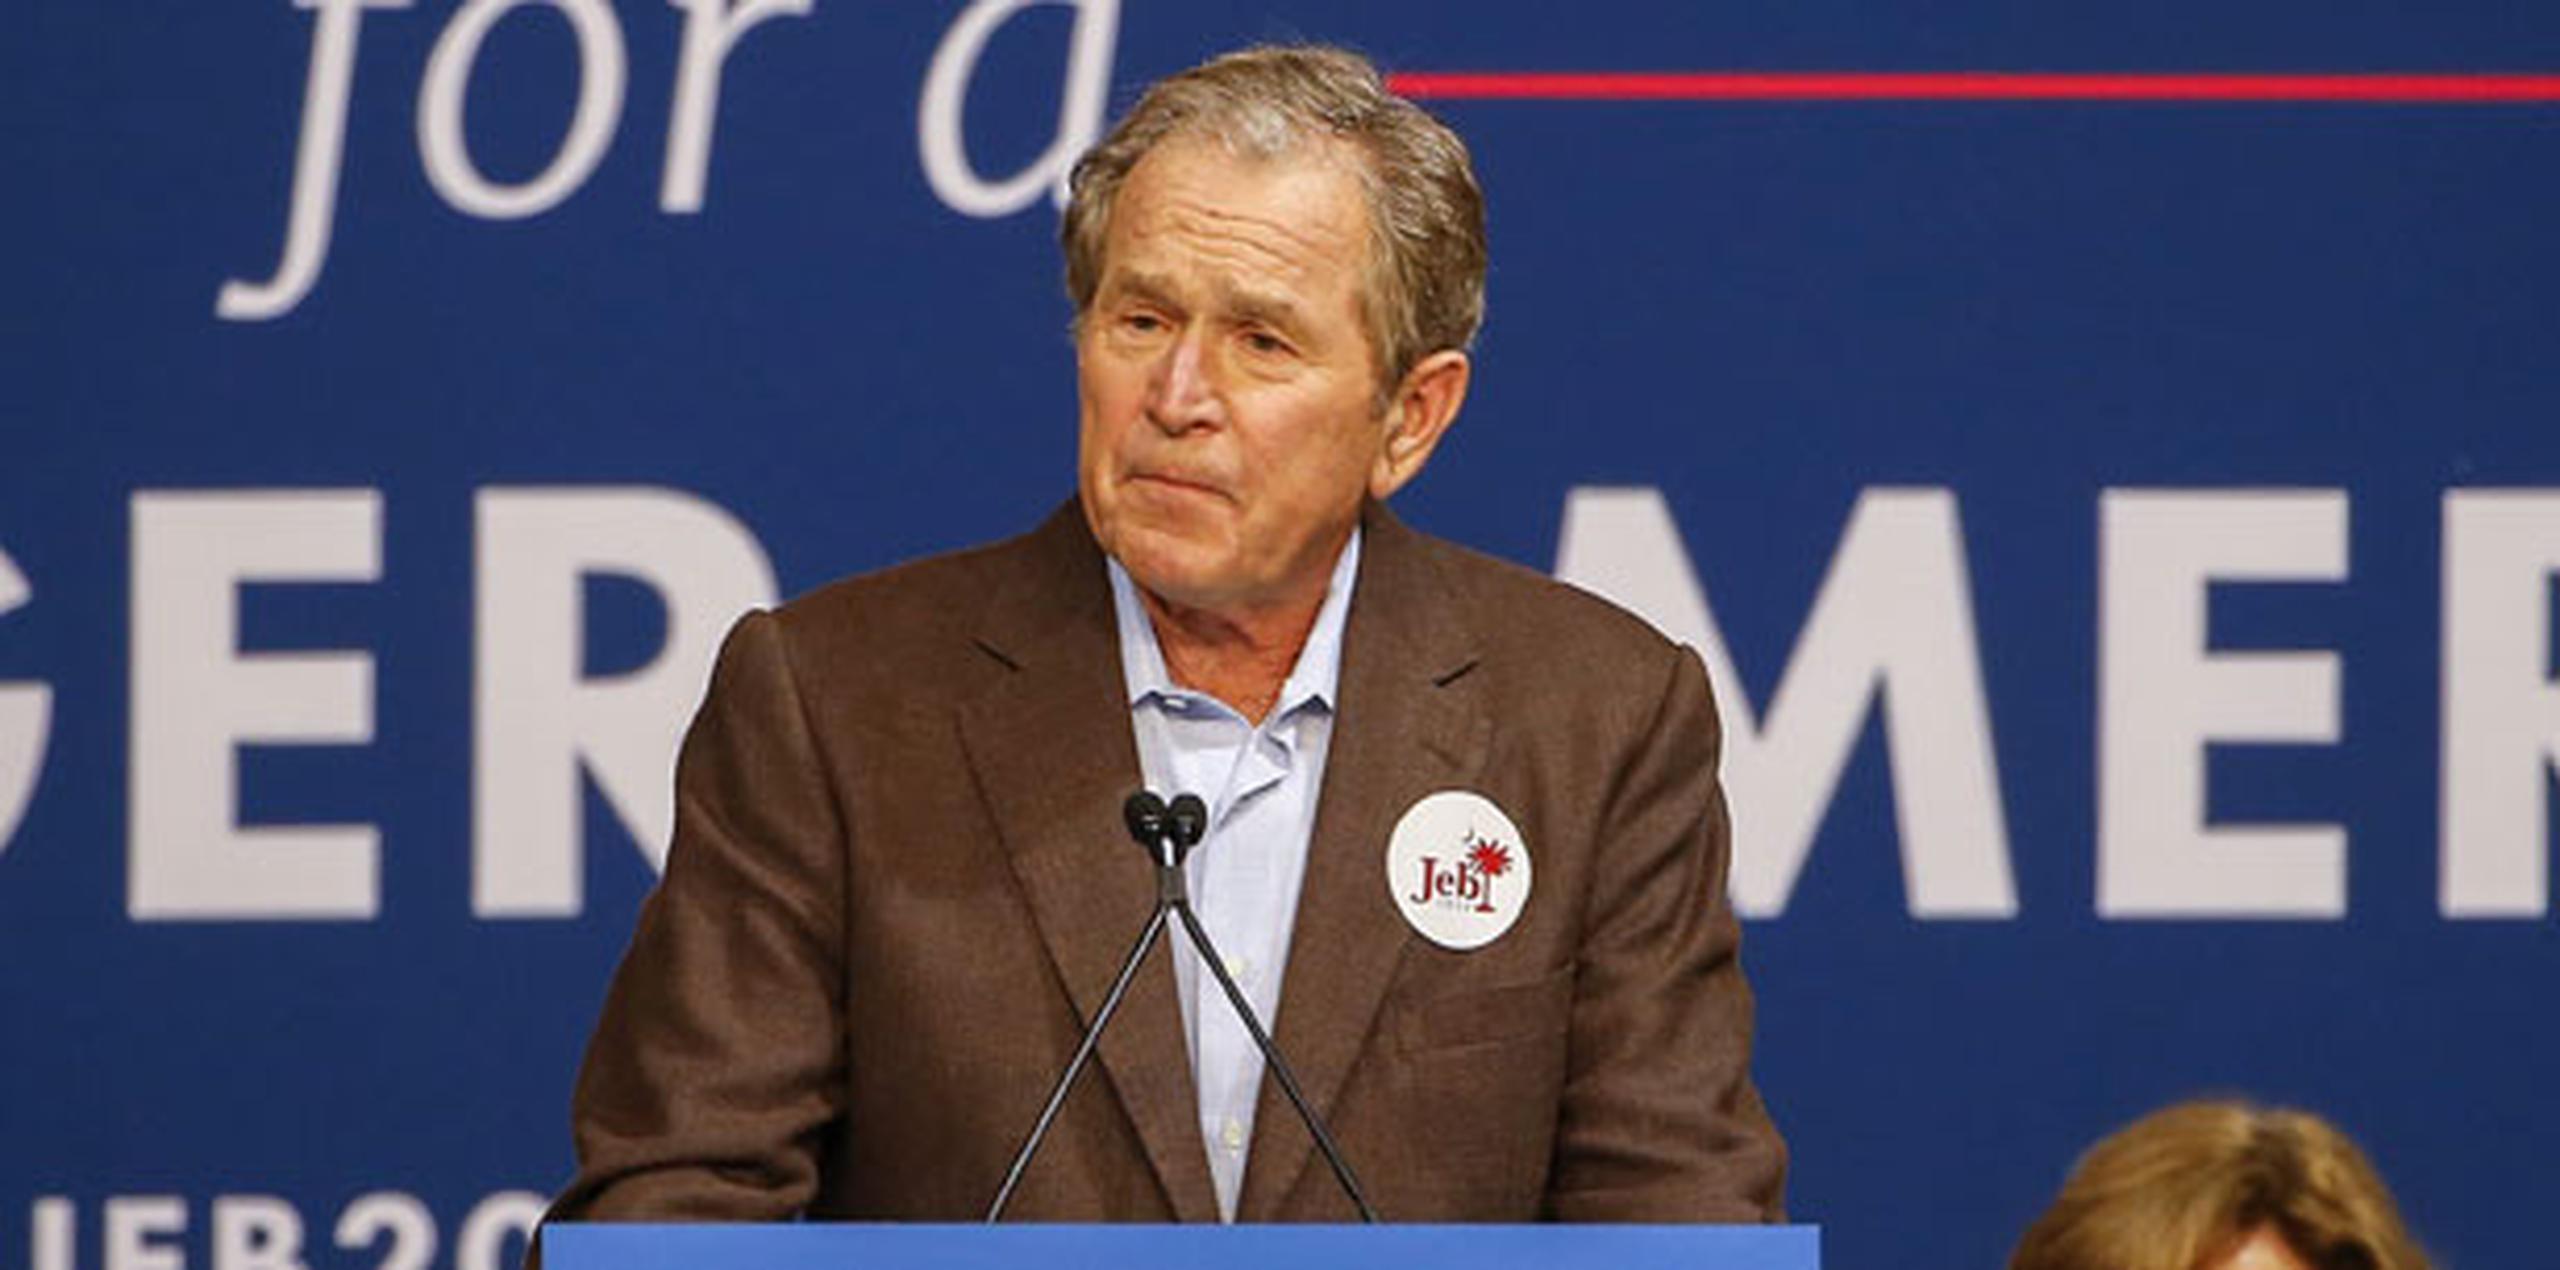 Bush pronosticó que las políticas de inmigración "justas" y "libres" se afianzarán, pero deberán comenzar reconociendo una responsabilidad "clara" en la frontera. (EFE)